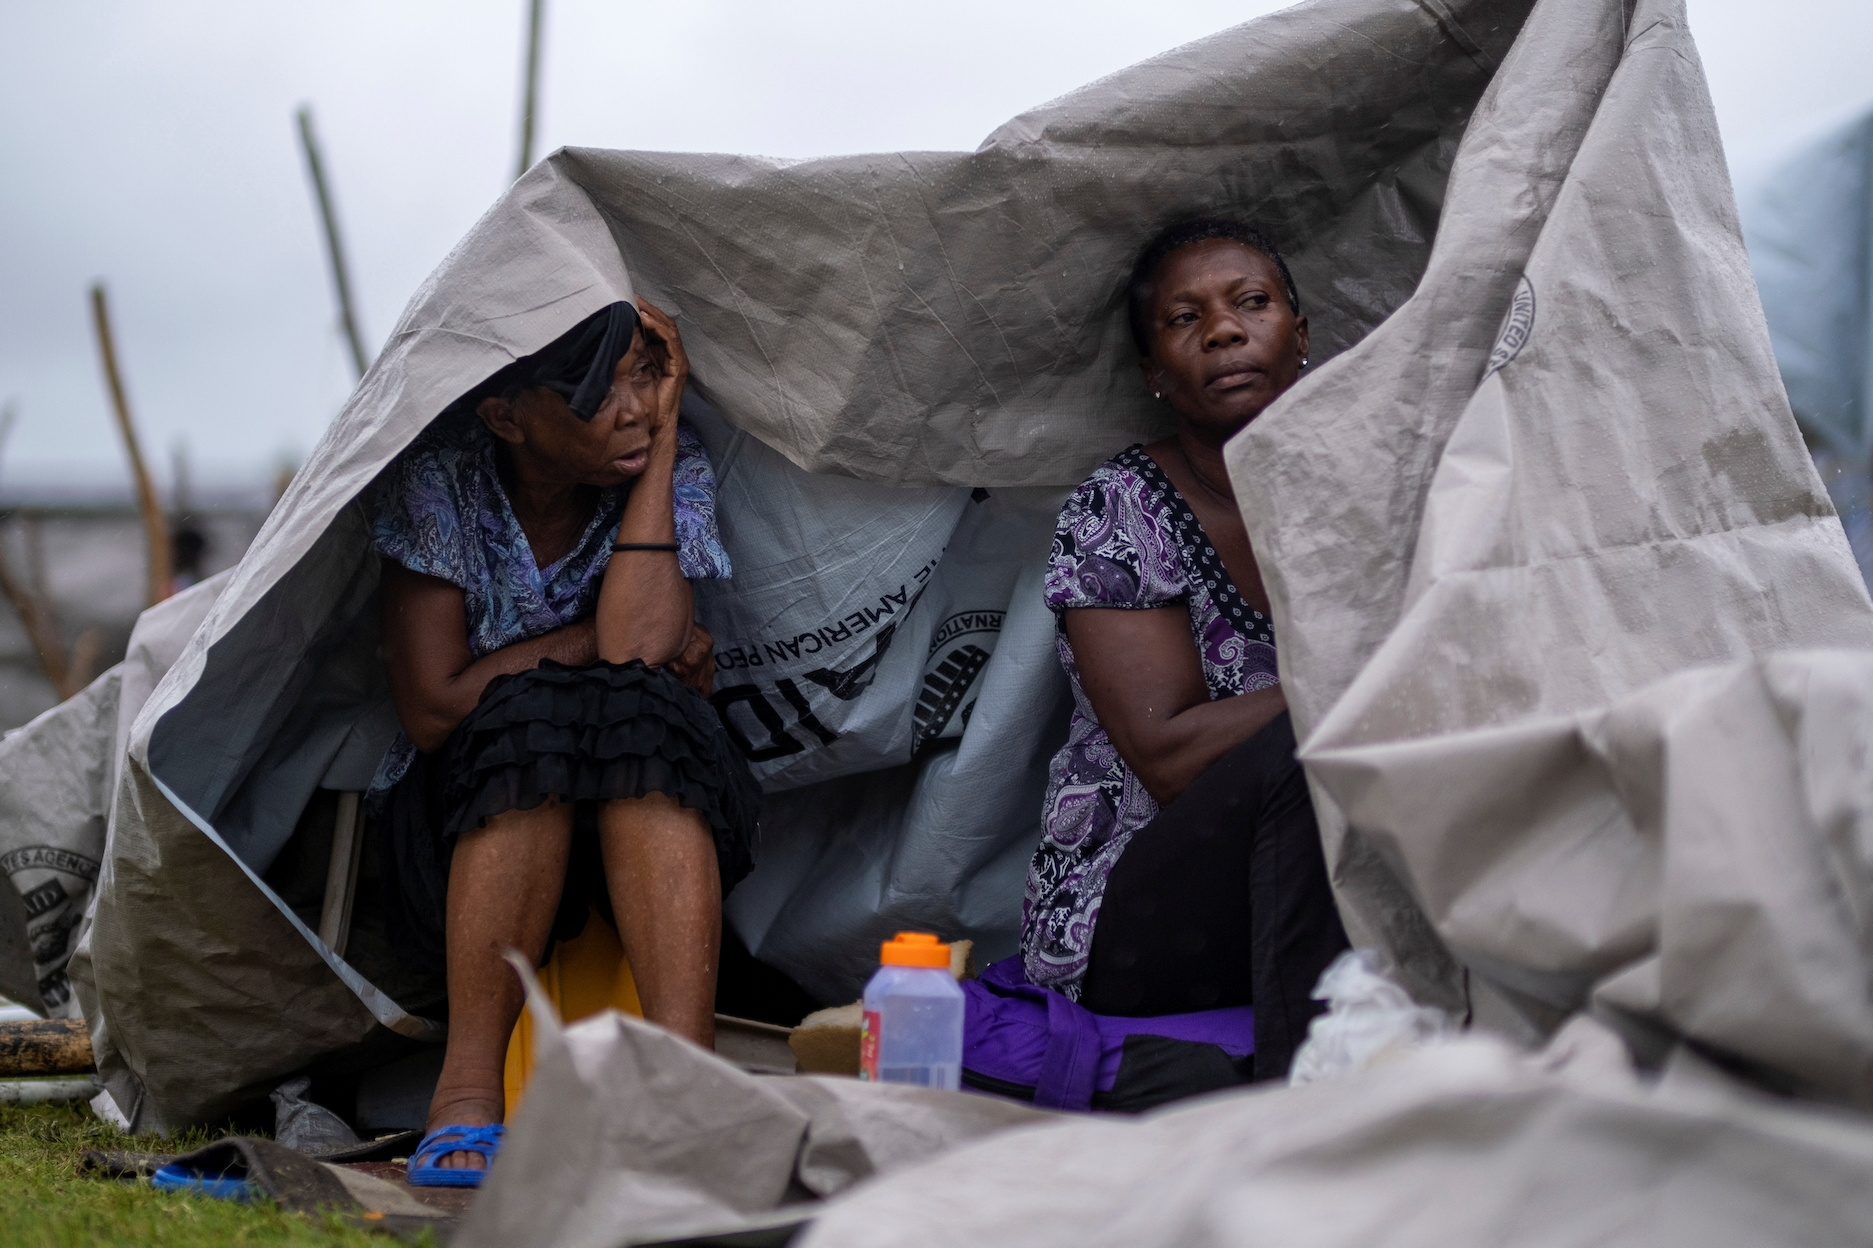 ‘We need food’: Heavy rains lash Haiti quake survivors